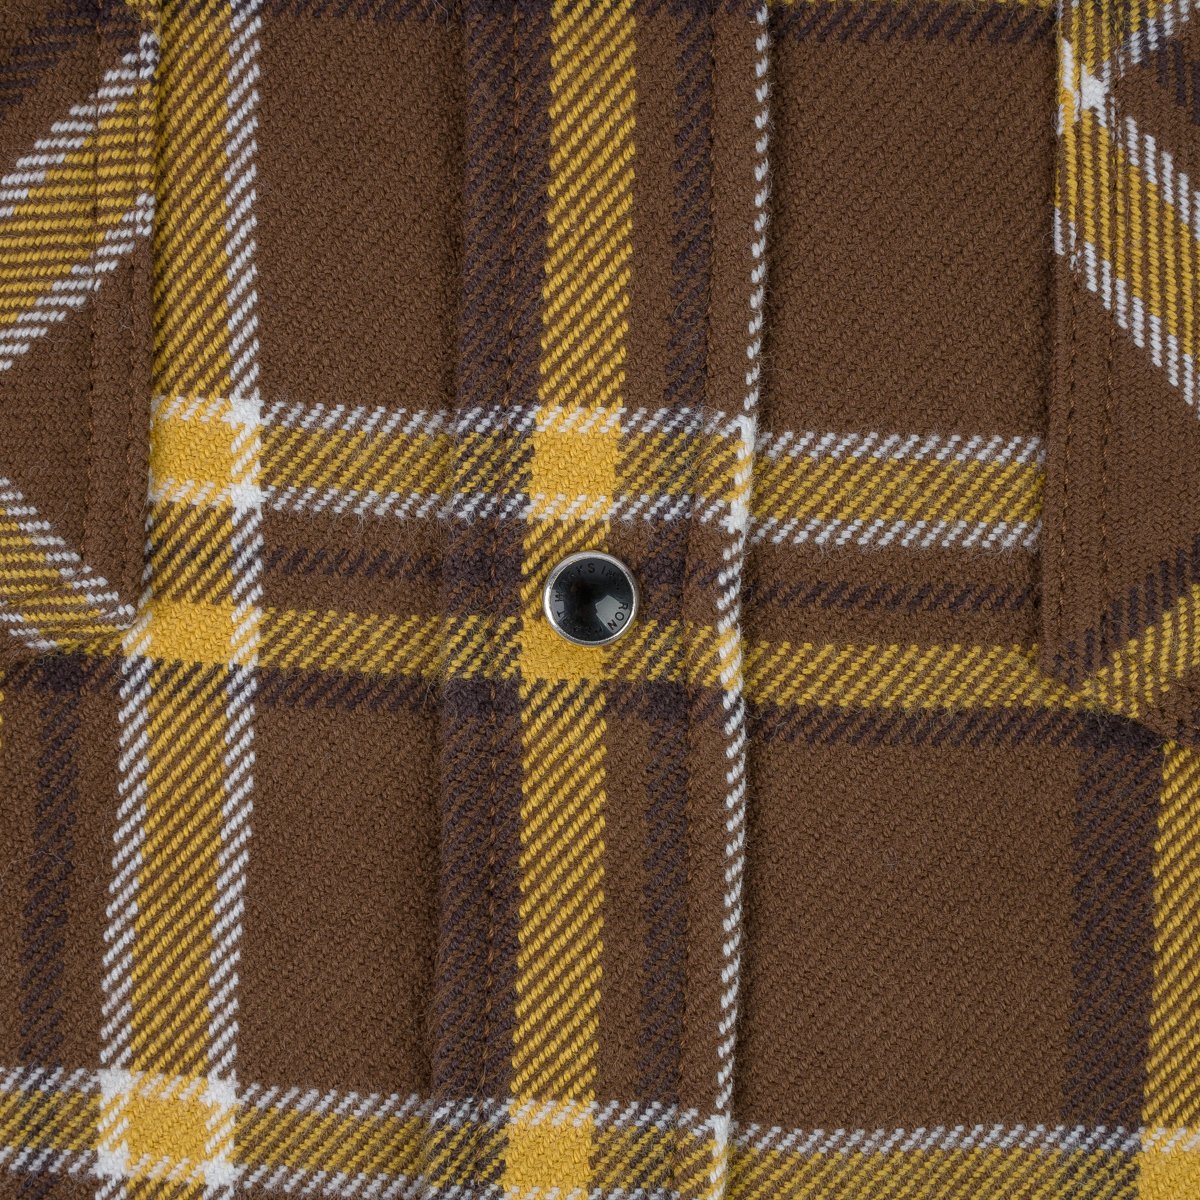 IHSH-372-BRN Ultra Heavy Flannel Brown Crazy Western Shirt